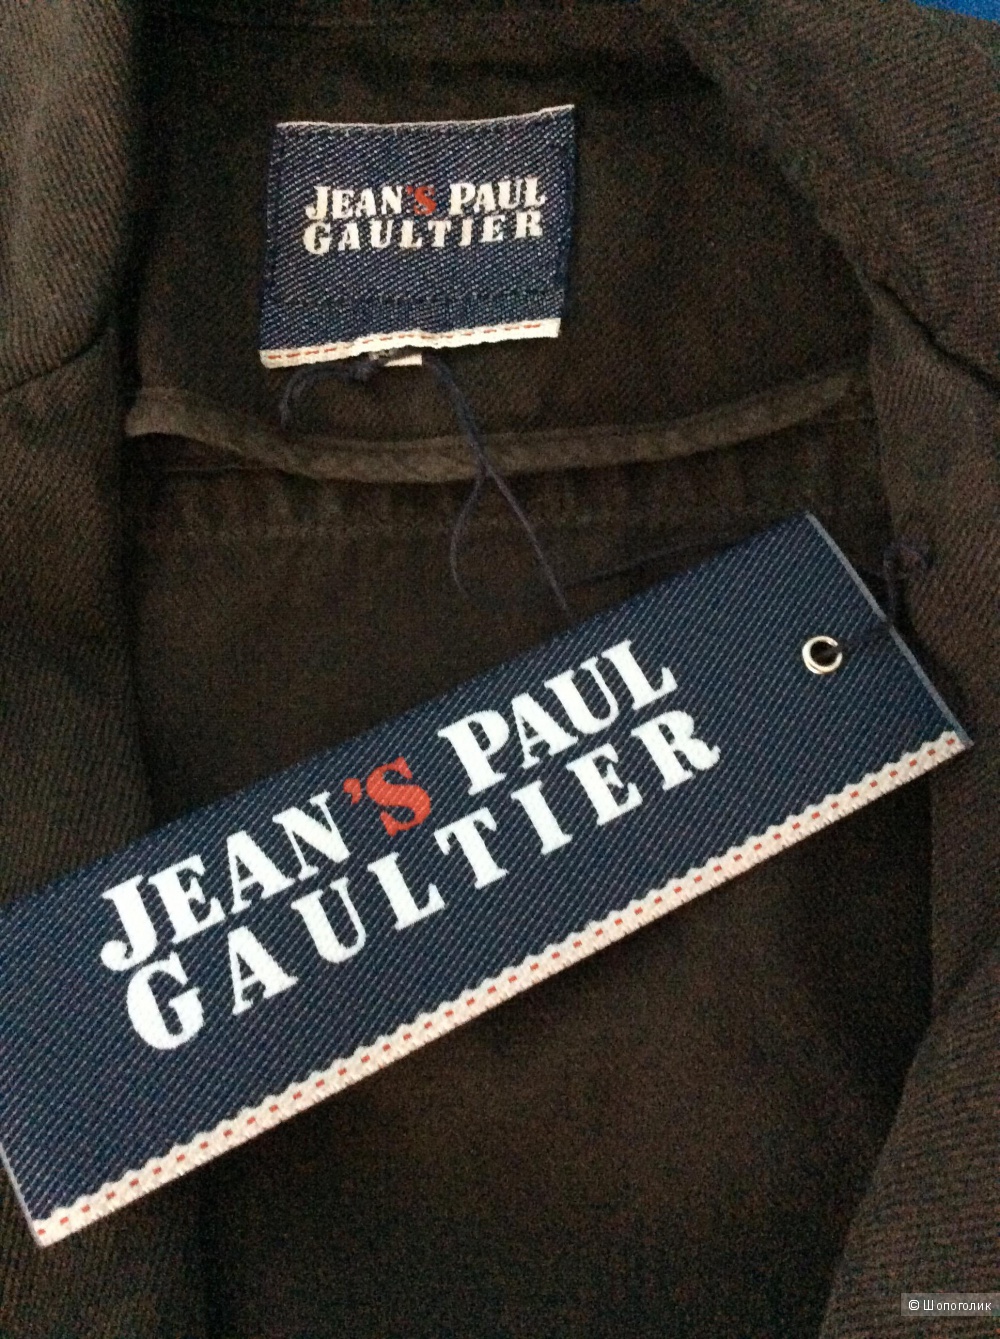 Жакет Jean’s Paul Gaultier р.44 IT (на 46)